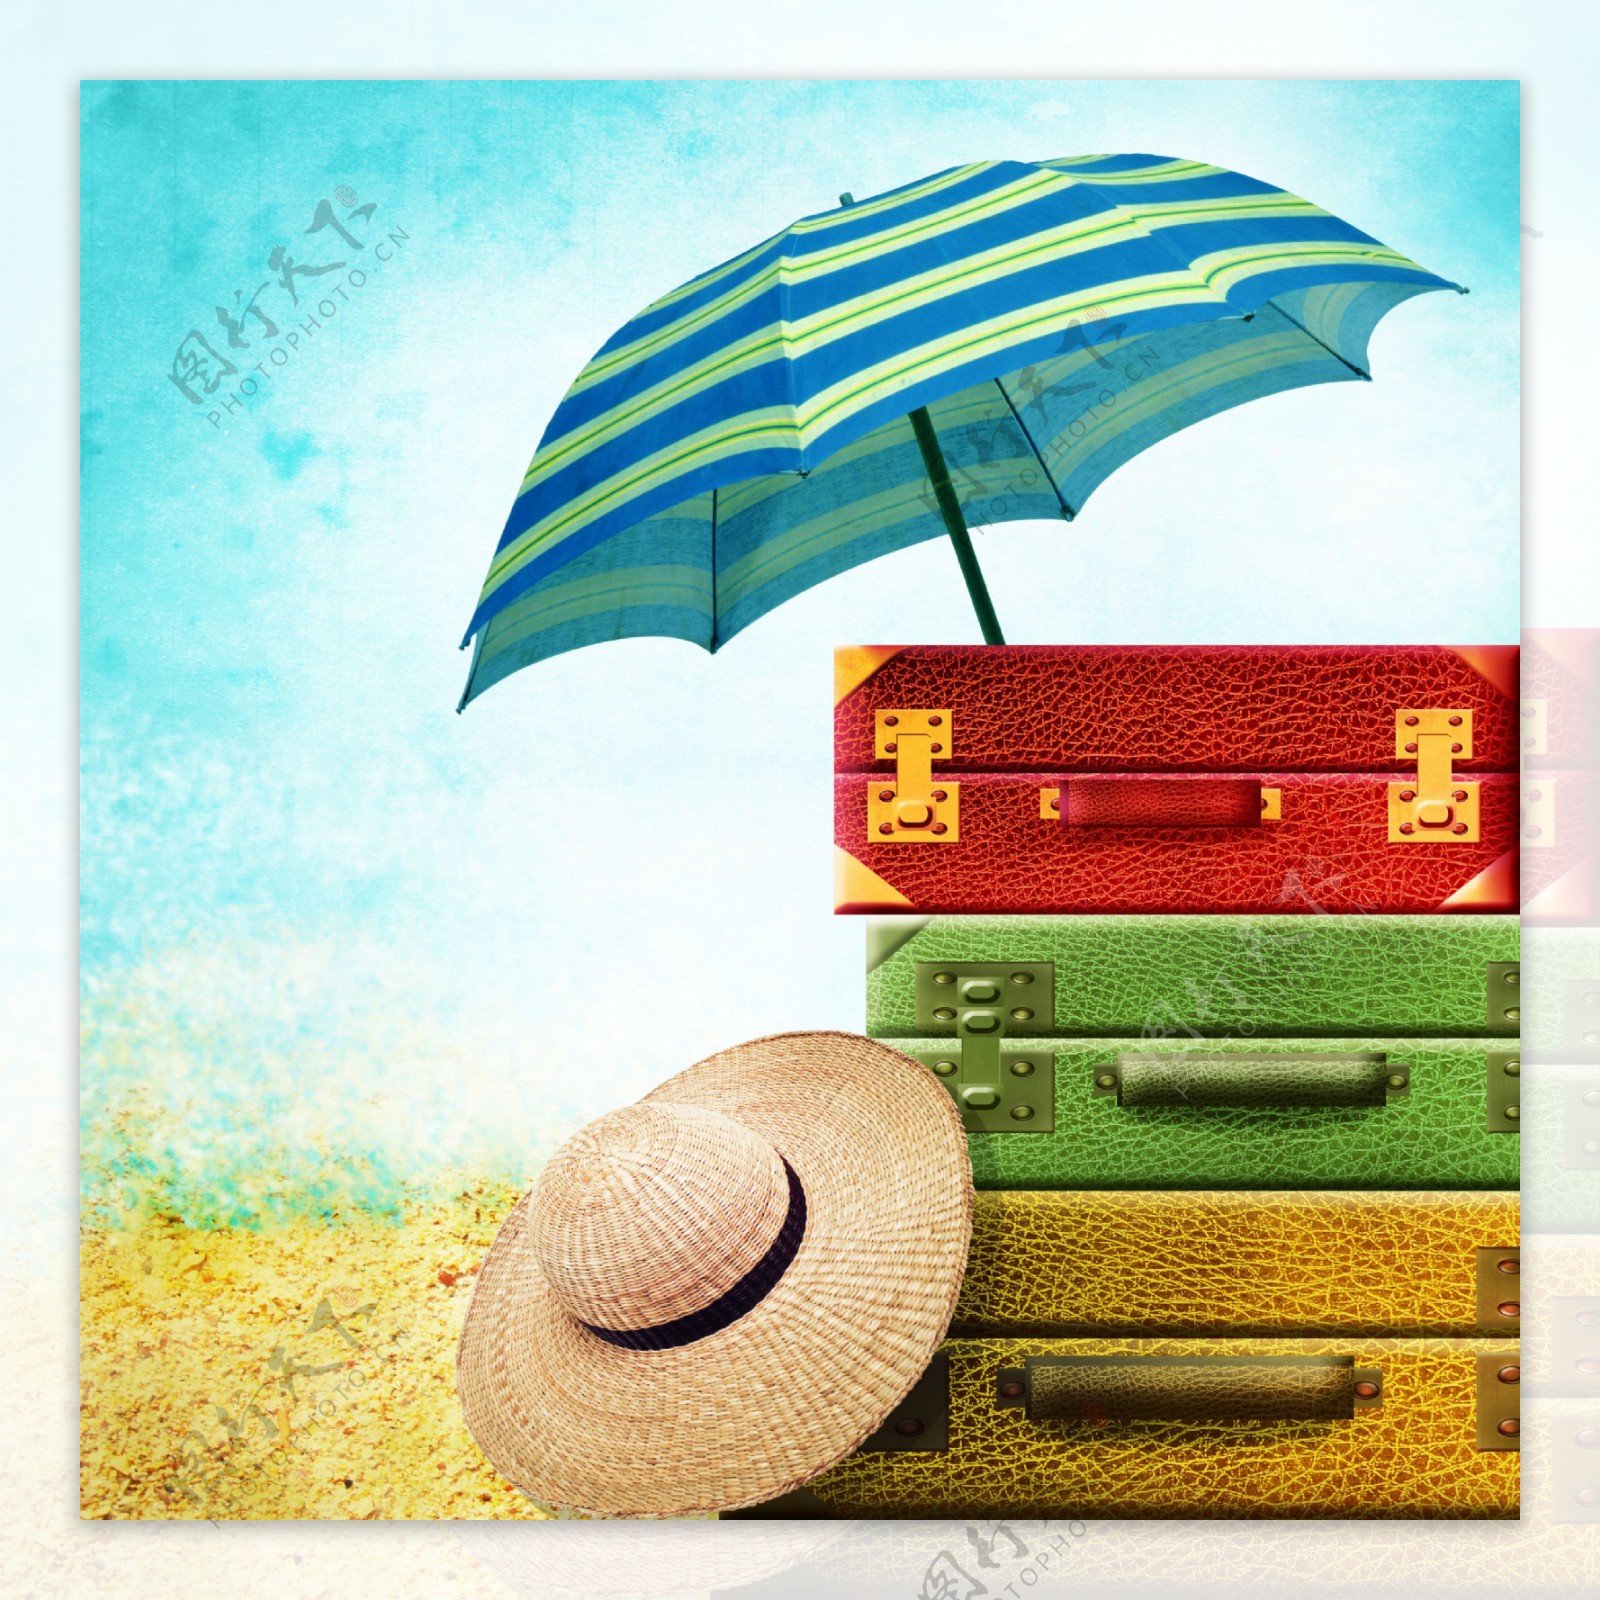 太阳伞与旅行箱草帽图片